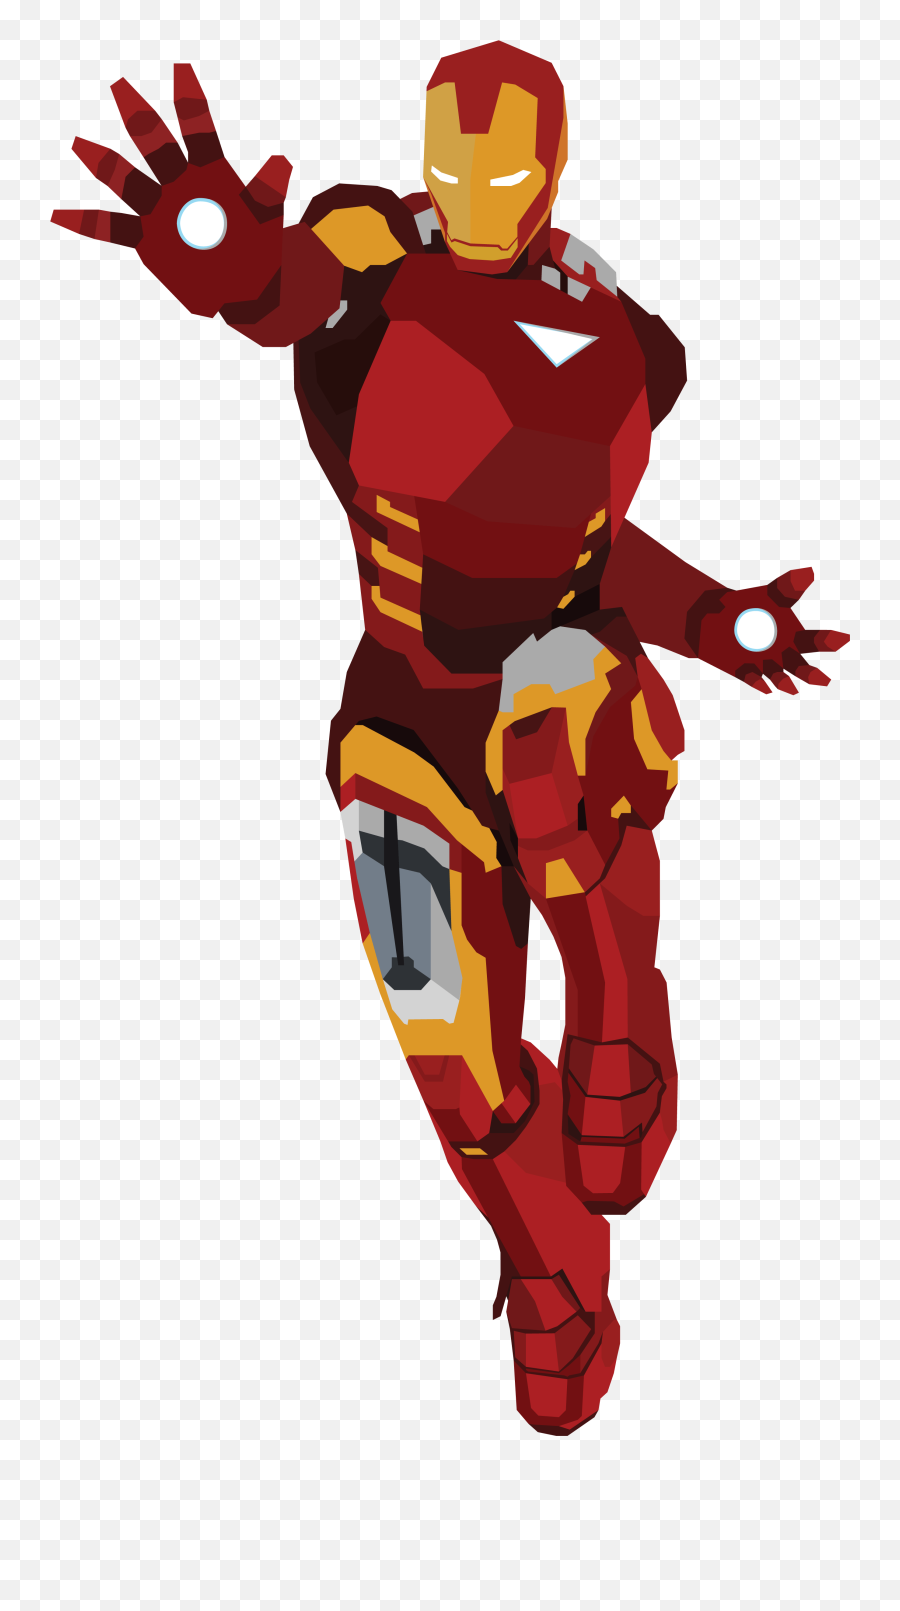 Iron Man Vector Design Clipart - Transparent Iron Man Png,Iron Man Mask Png